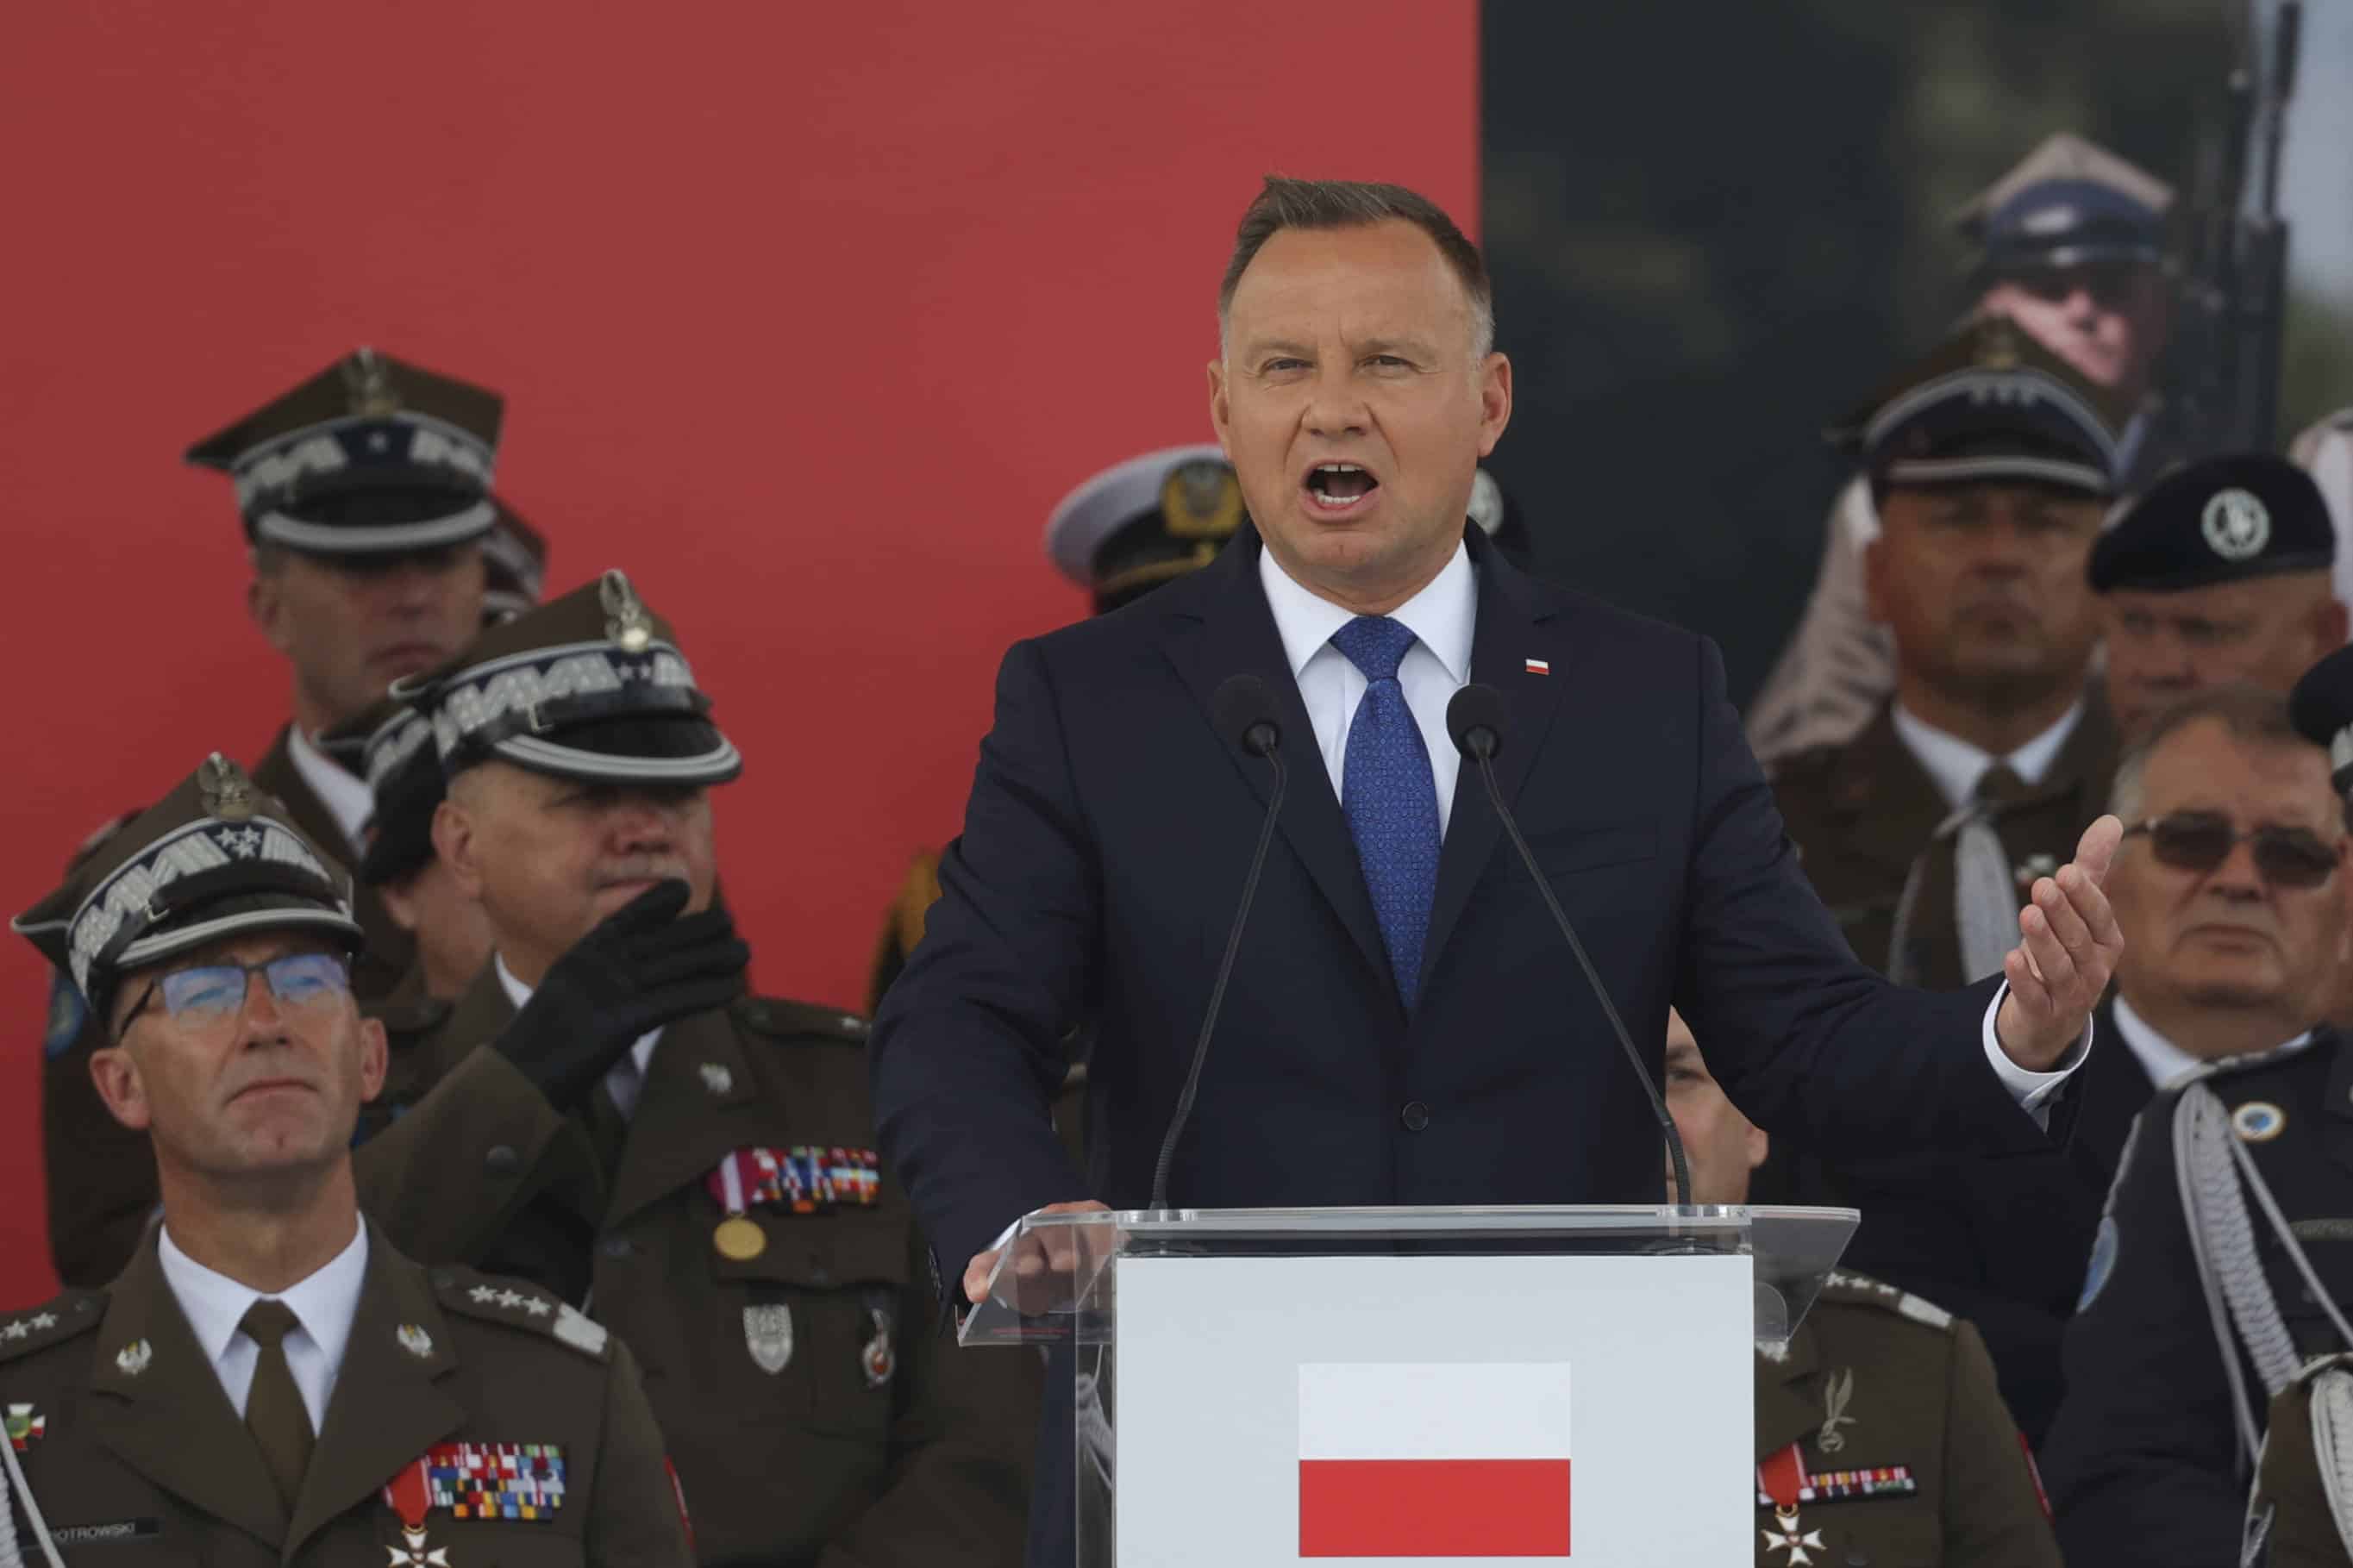 Le président polonais Andrzej Duda prononce un discours lors de la cérémonie marquant la Journée de l'armée polonaise à Varsovie, en Pologne, le lundi 15 août 2022. (AP Photo/Michal Dyjuk)/DYJ101/22227477260815//2208151545